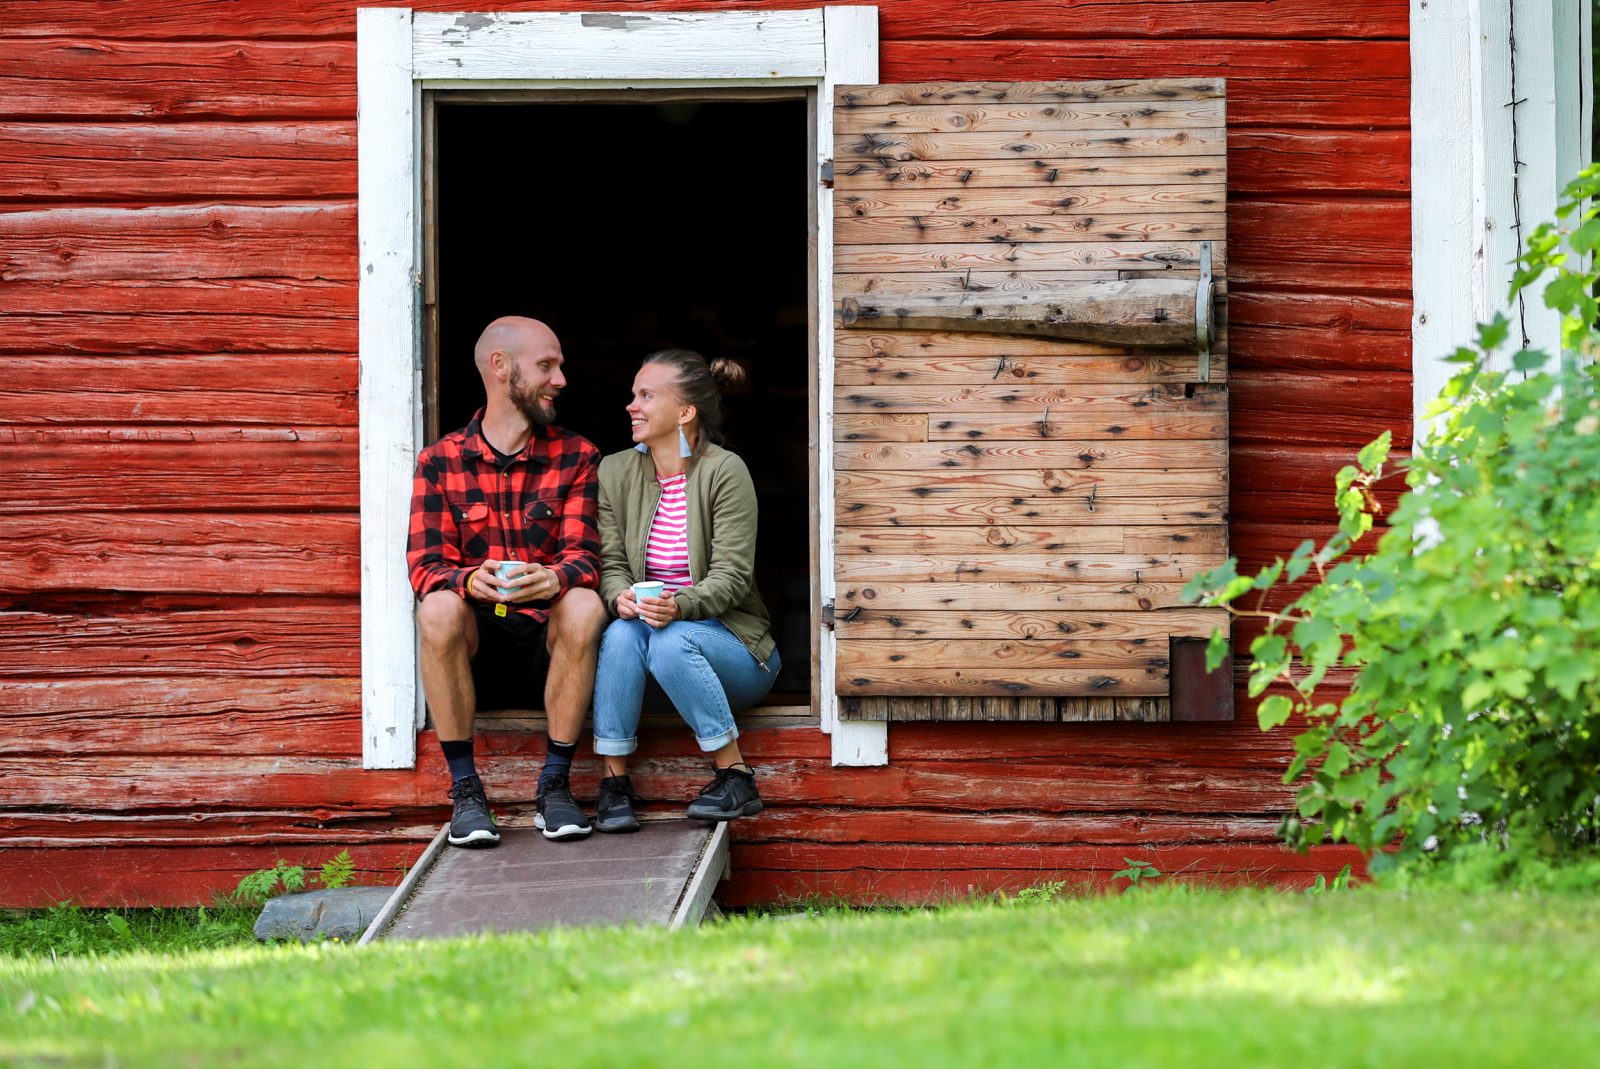 Mies ja nainen istuvat vanhan aitan oven kynnyksellä katsoen toisiaan.